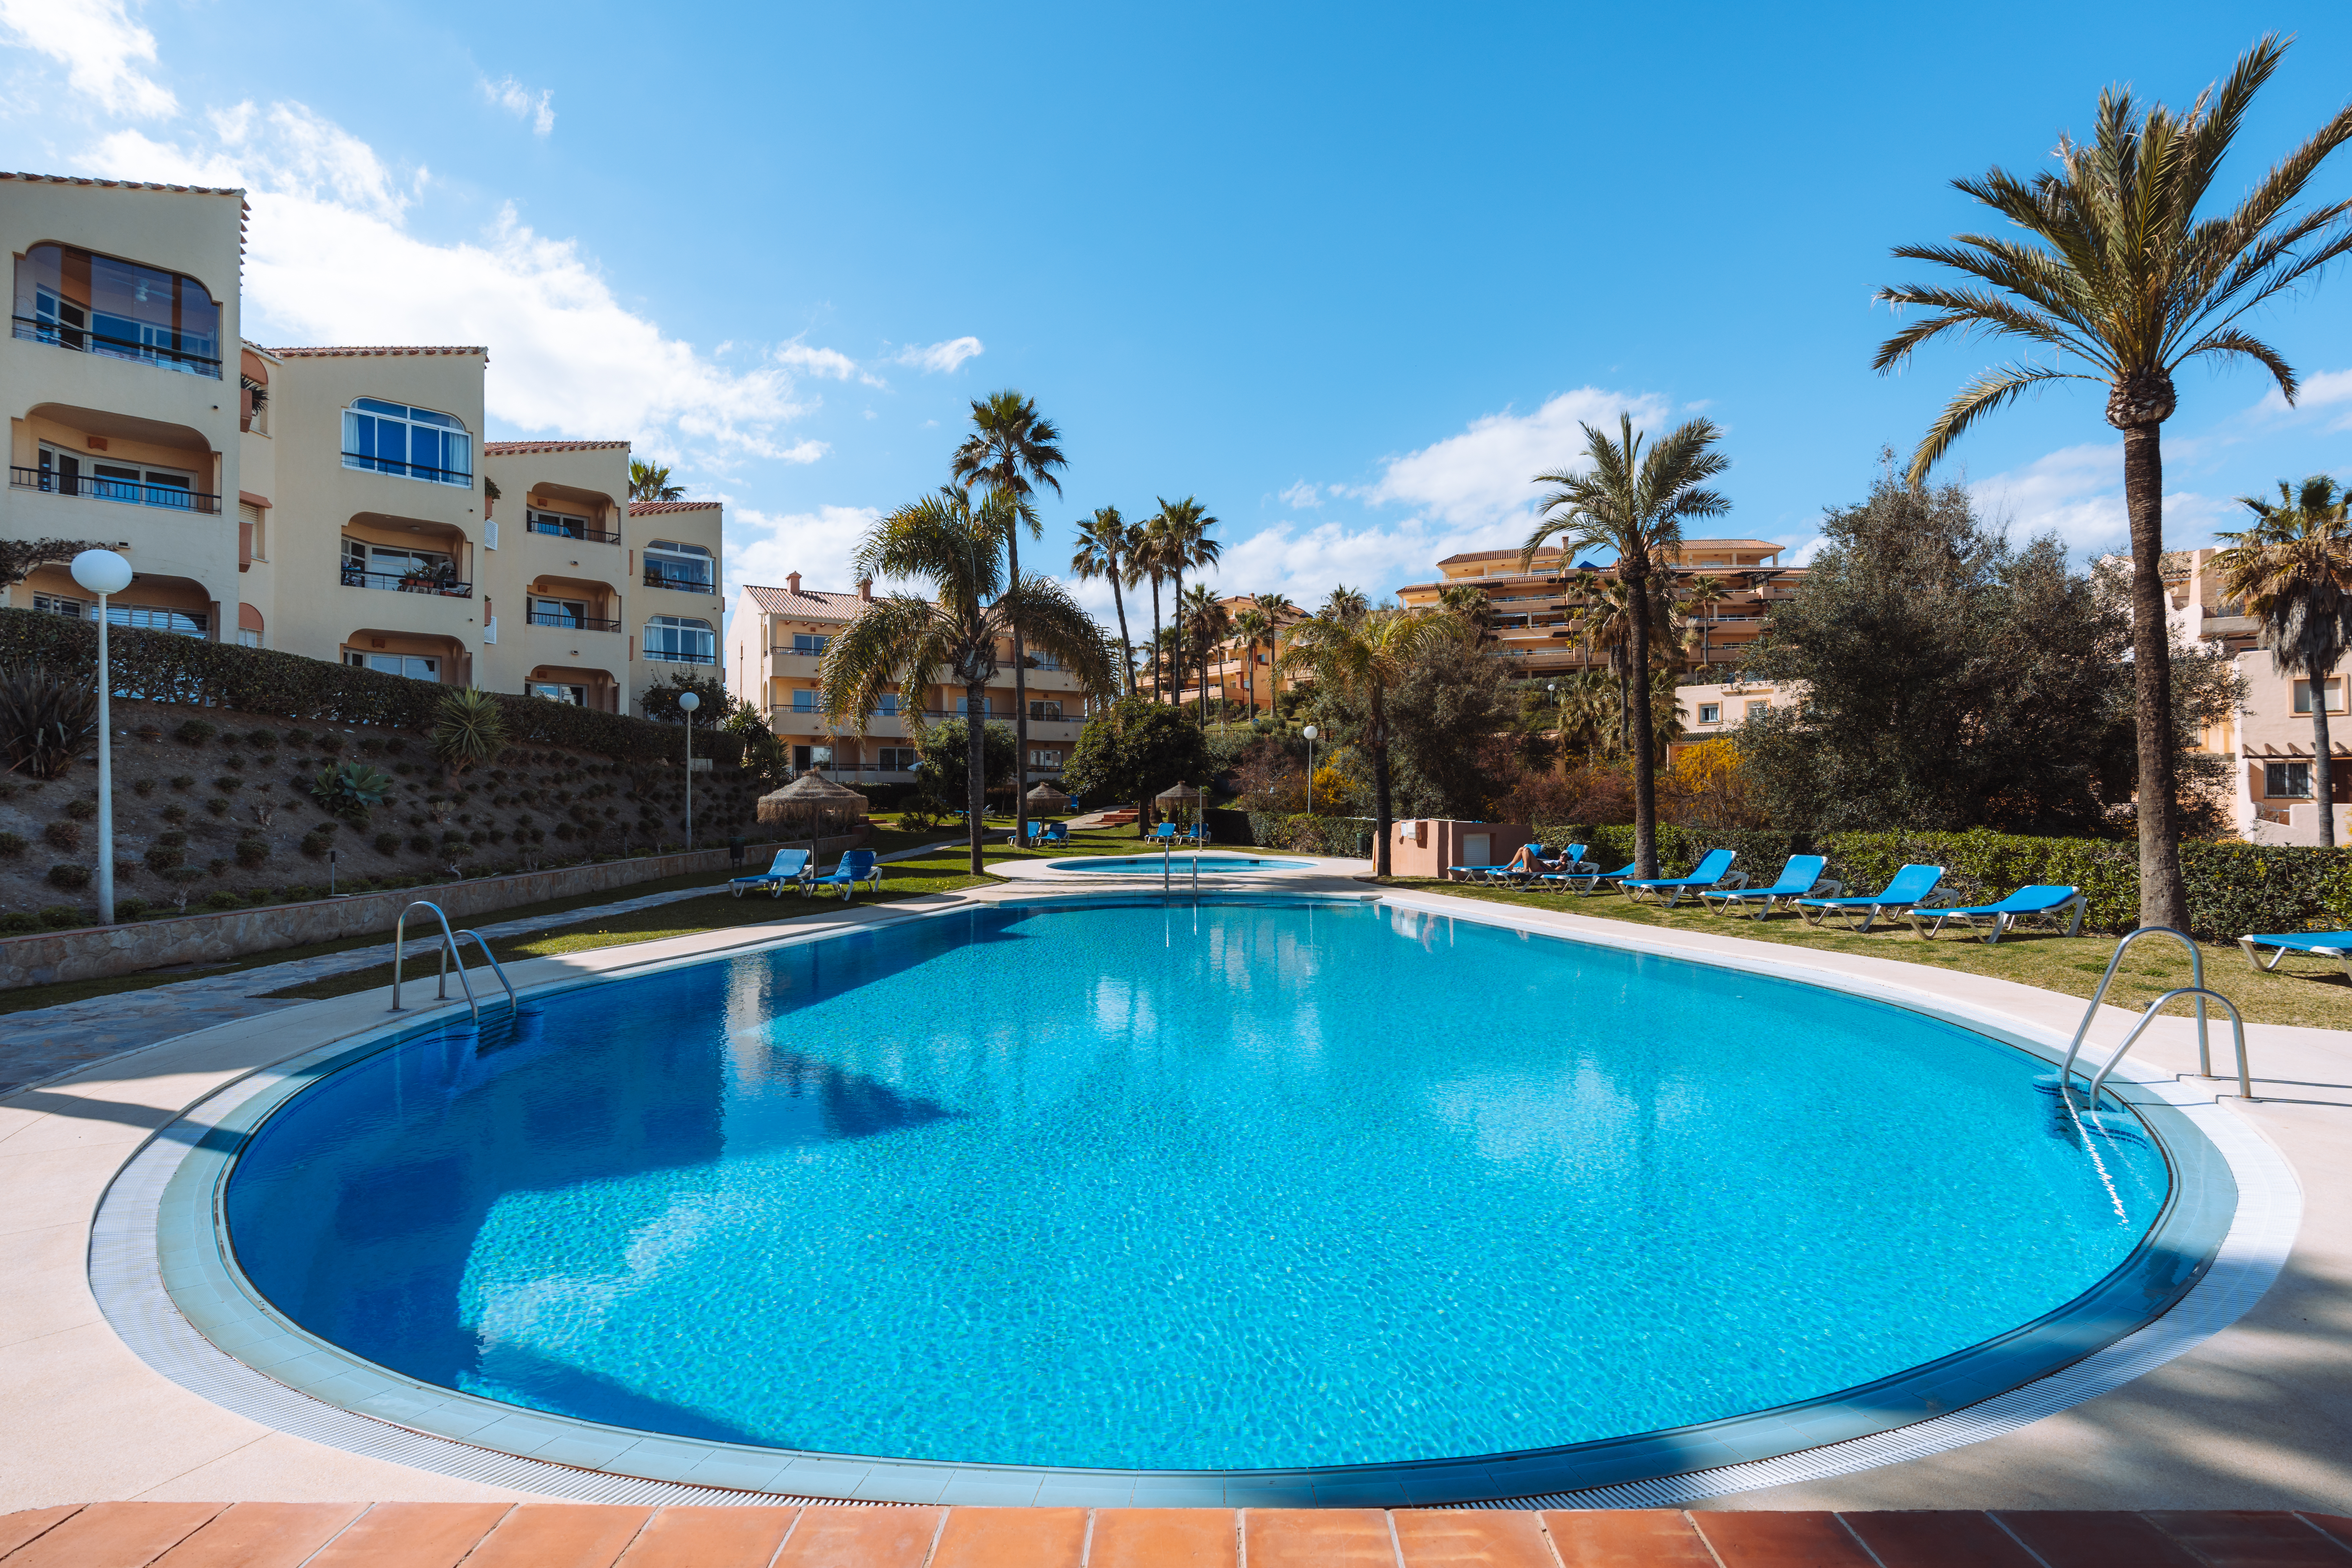 Vuele por siete noches de alojamiento y desayuno en el Ramada Hotel & Suites en la Costa del Sol, España. Para tener la oportunidad de ganar este viaje, vote en nuestros premios.